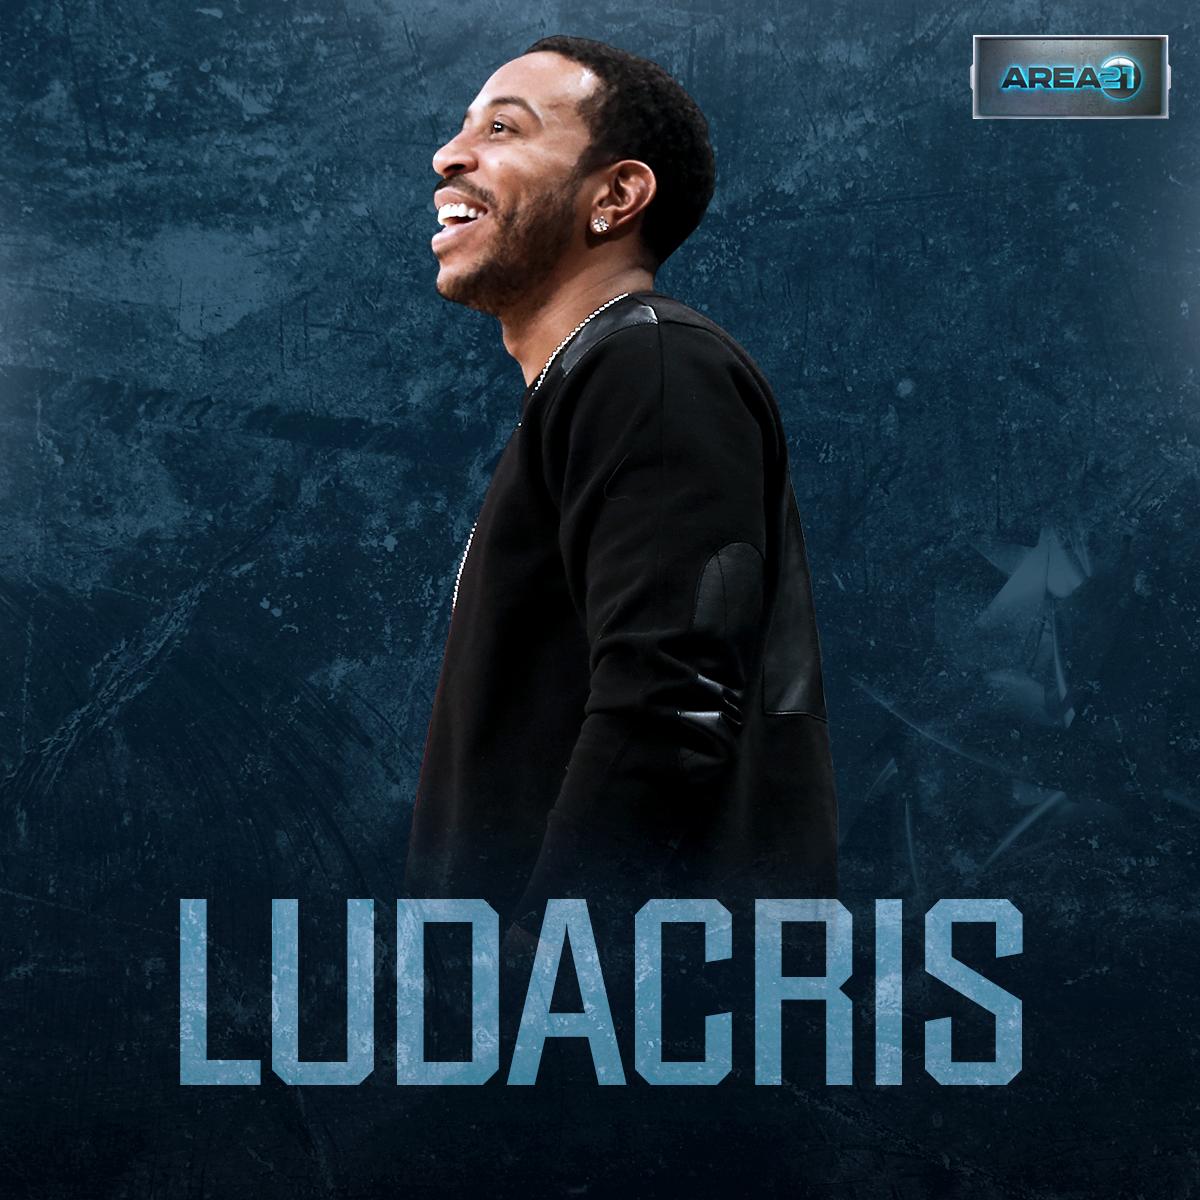 RT @KGArea21: .@Ludacris joins Kevin Garnett in #KGArea21 tonight! ???? https://t.co/JXnCORkKfA